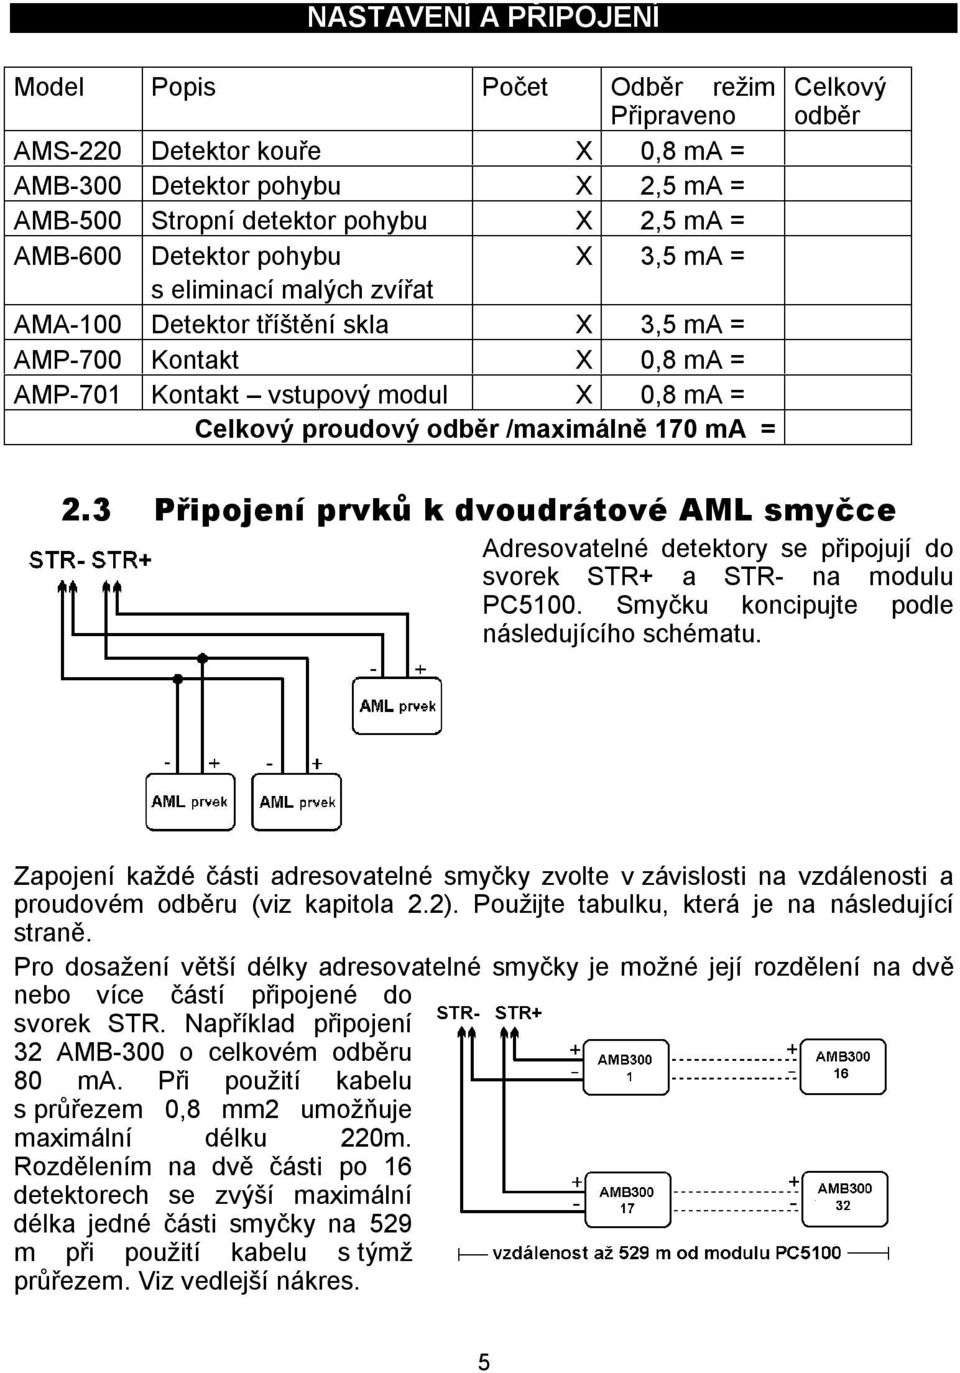 odběr 2.3 Připojení prvků k dvoudrátové AML smyčce Adresovatelné detektory se připojují do svorek STR+ a STR- na modulu PC5100. Smyčku koncipujte podle následujícího schématu.